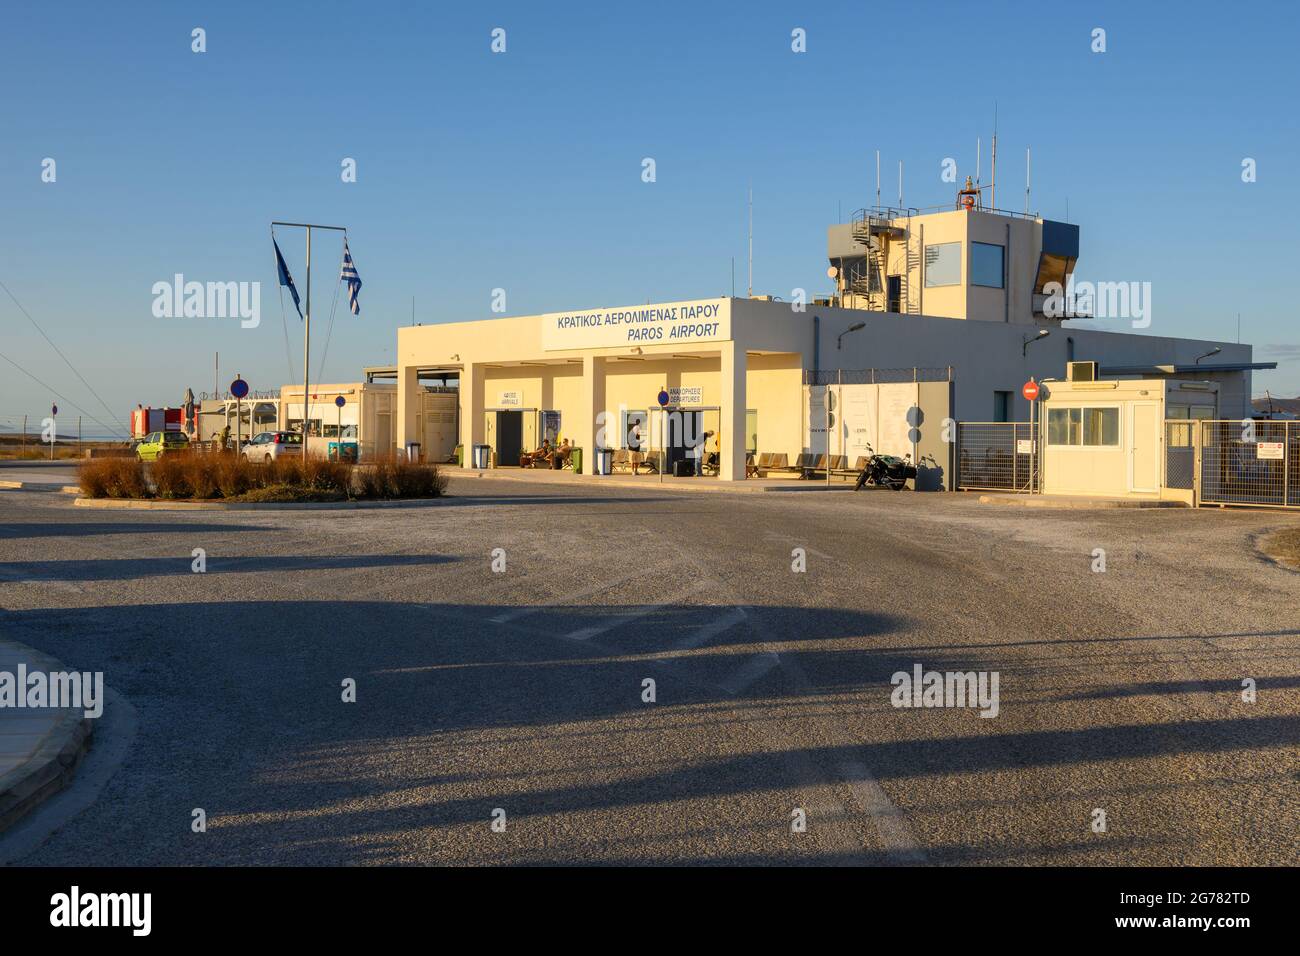 Paros, Grecia - 1 ottobre 2020: Edificio dell'aeroporto di Paros. L'aeroporto si trova nella regione di Alyki, 10 km a sud di Parikia. Isola di Paros, Cicladi Foto Stock